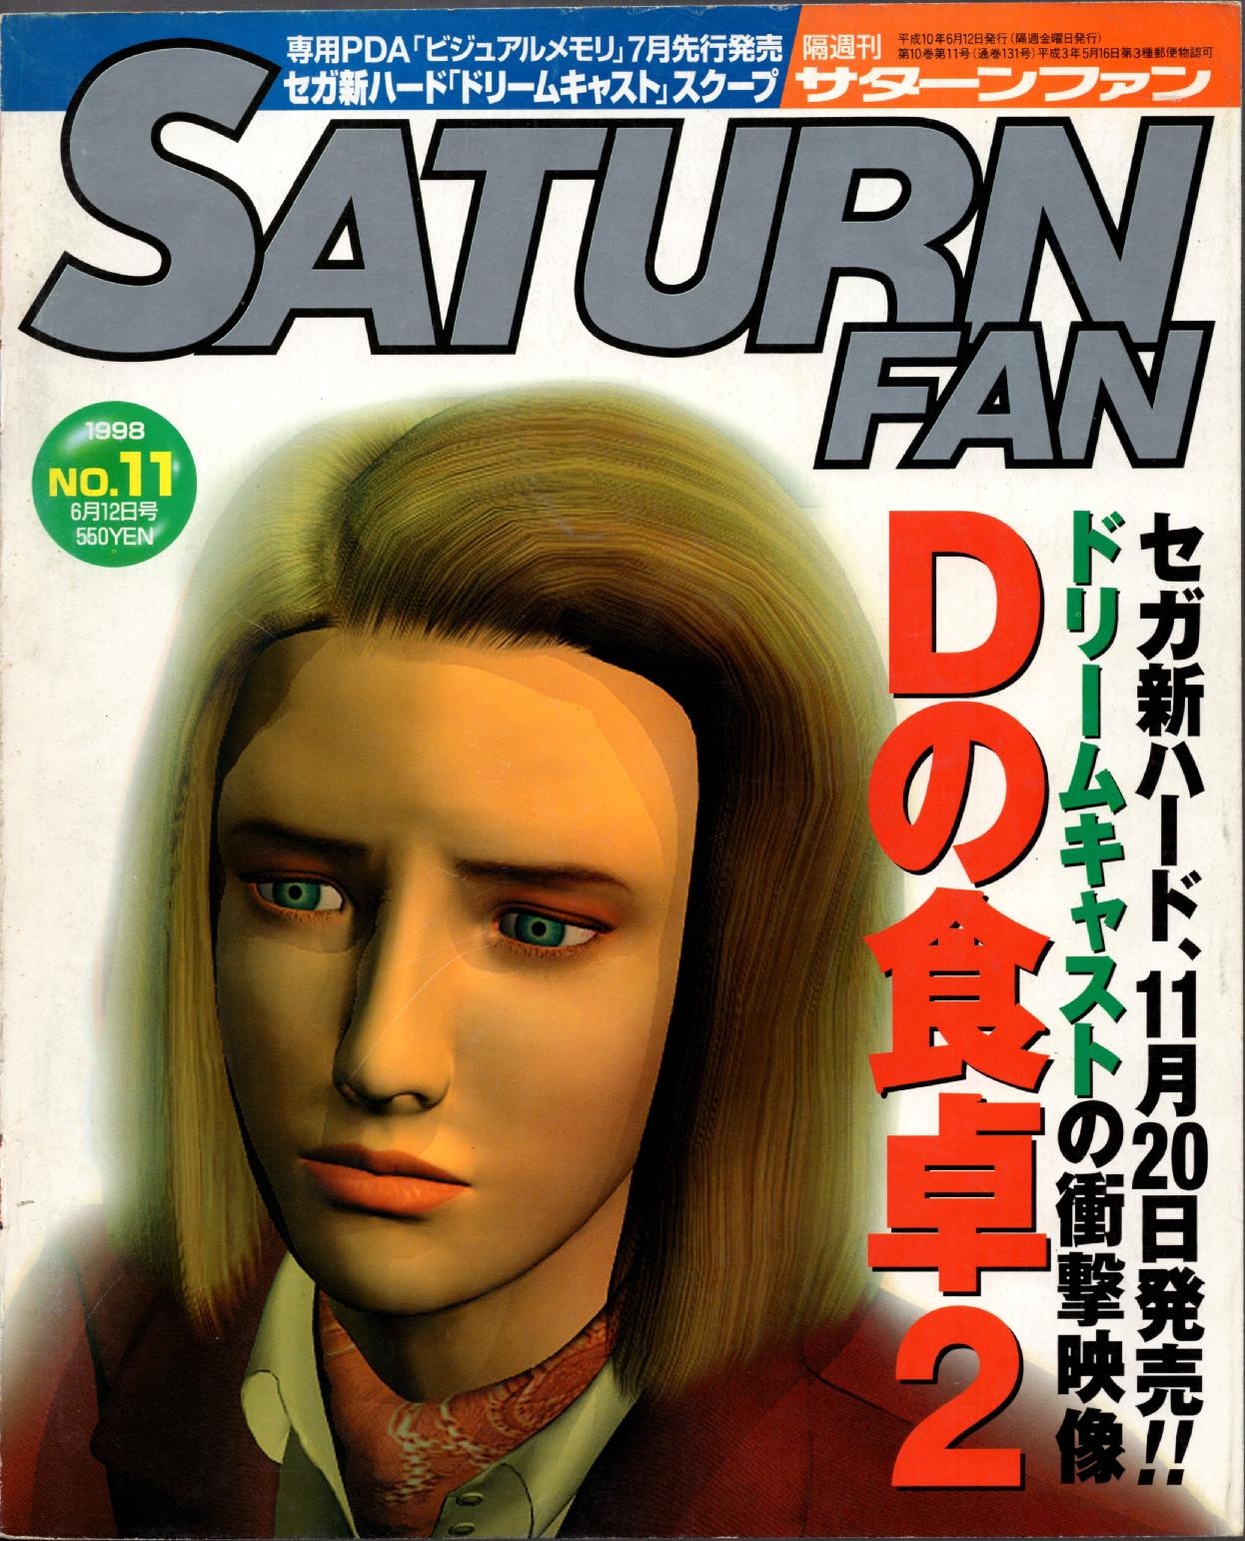 SaturnFan JP 1998-11 19980612.pdf